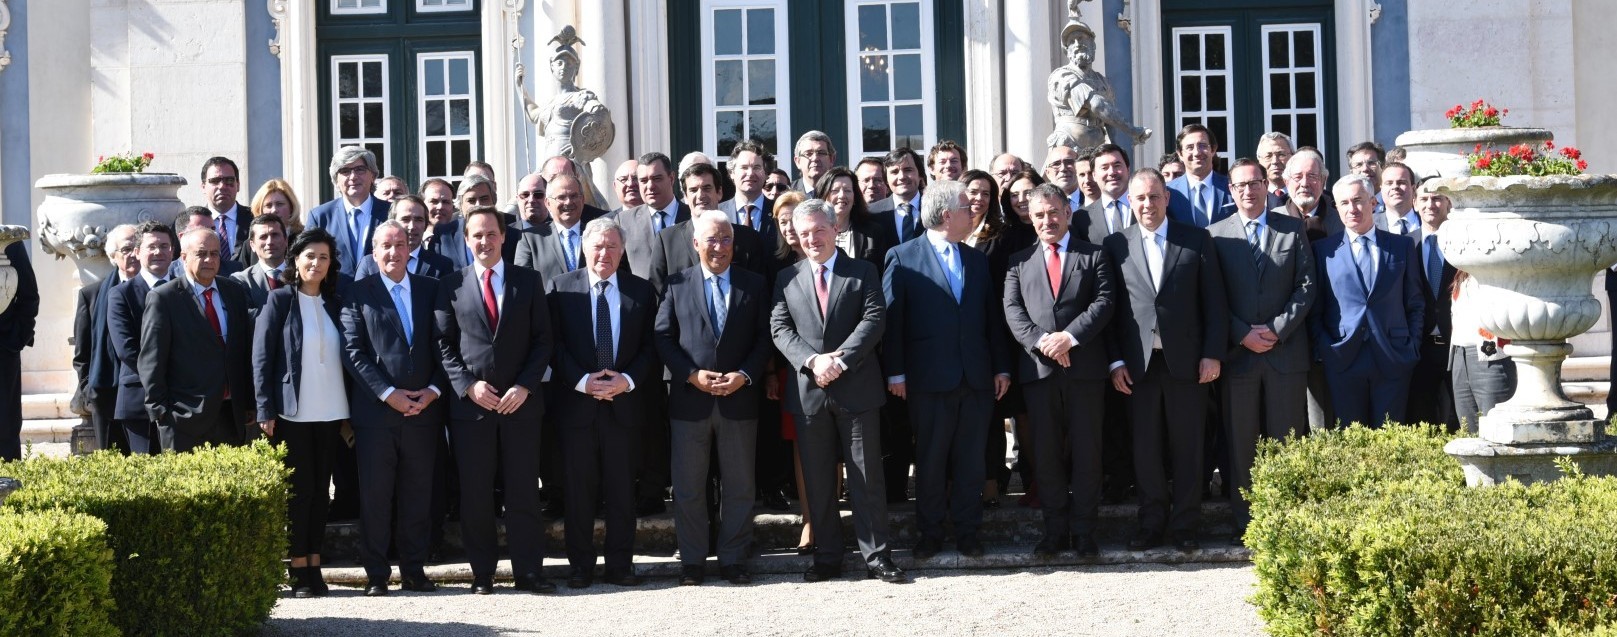 Municípios das áreas metropolitanas de Lisboa e do Porto reúnem em Cimeira